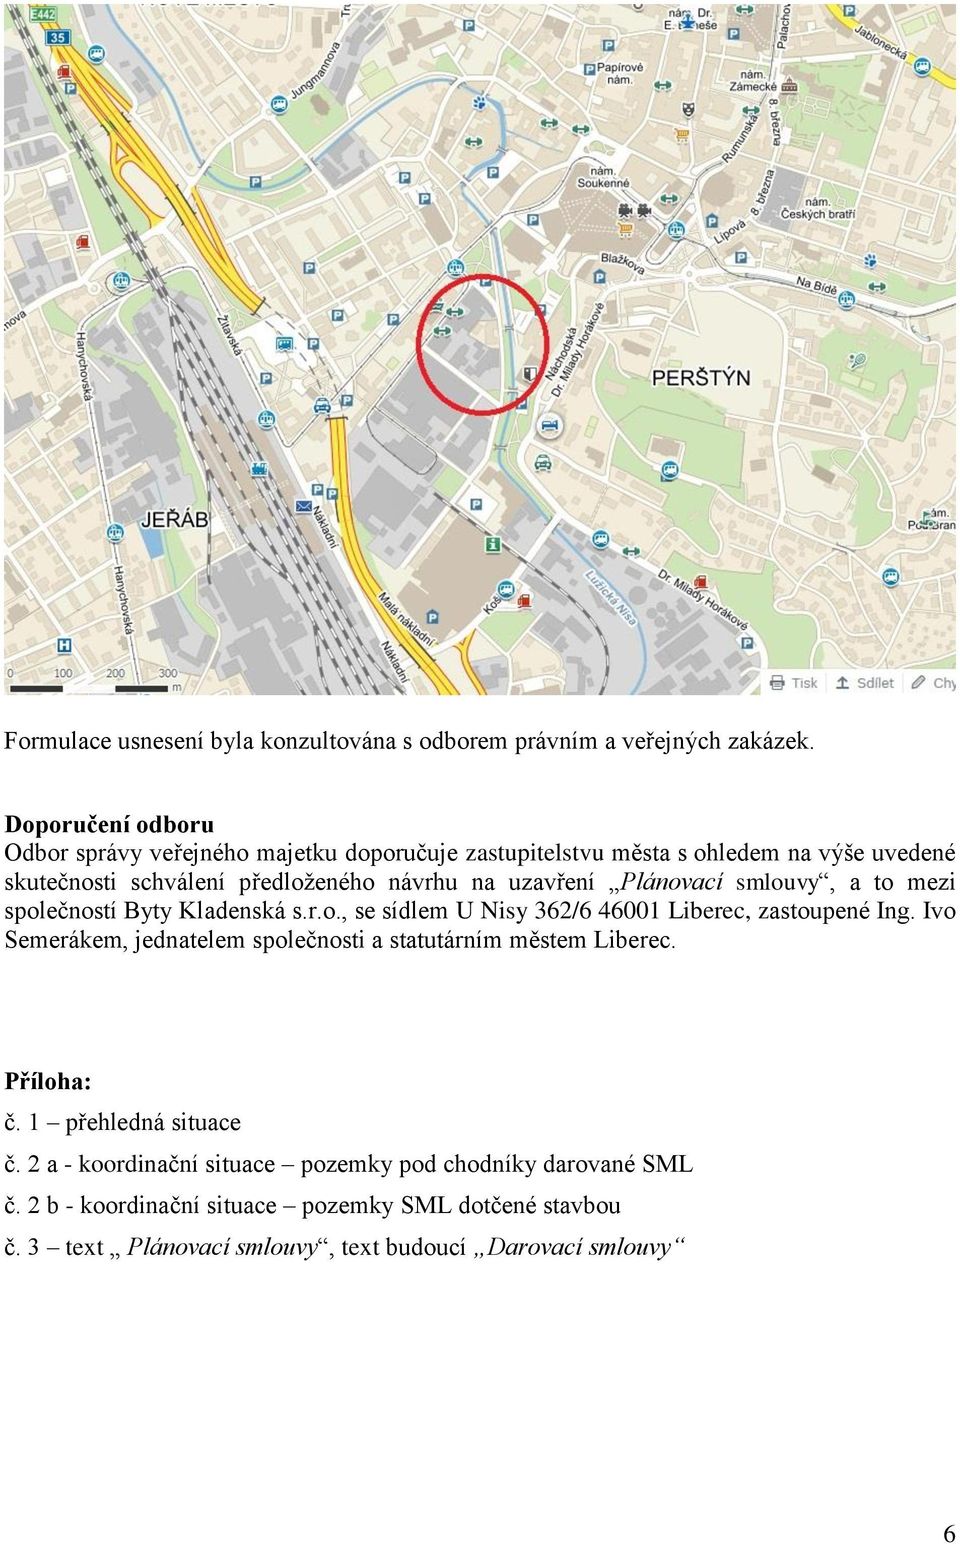 uzvření Plánovcí smlouvy, to mezi společností Byty Kldenská s.r.o., se sídlem U Nisy 362/6 46001 Liberec, zstoupené Ing.